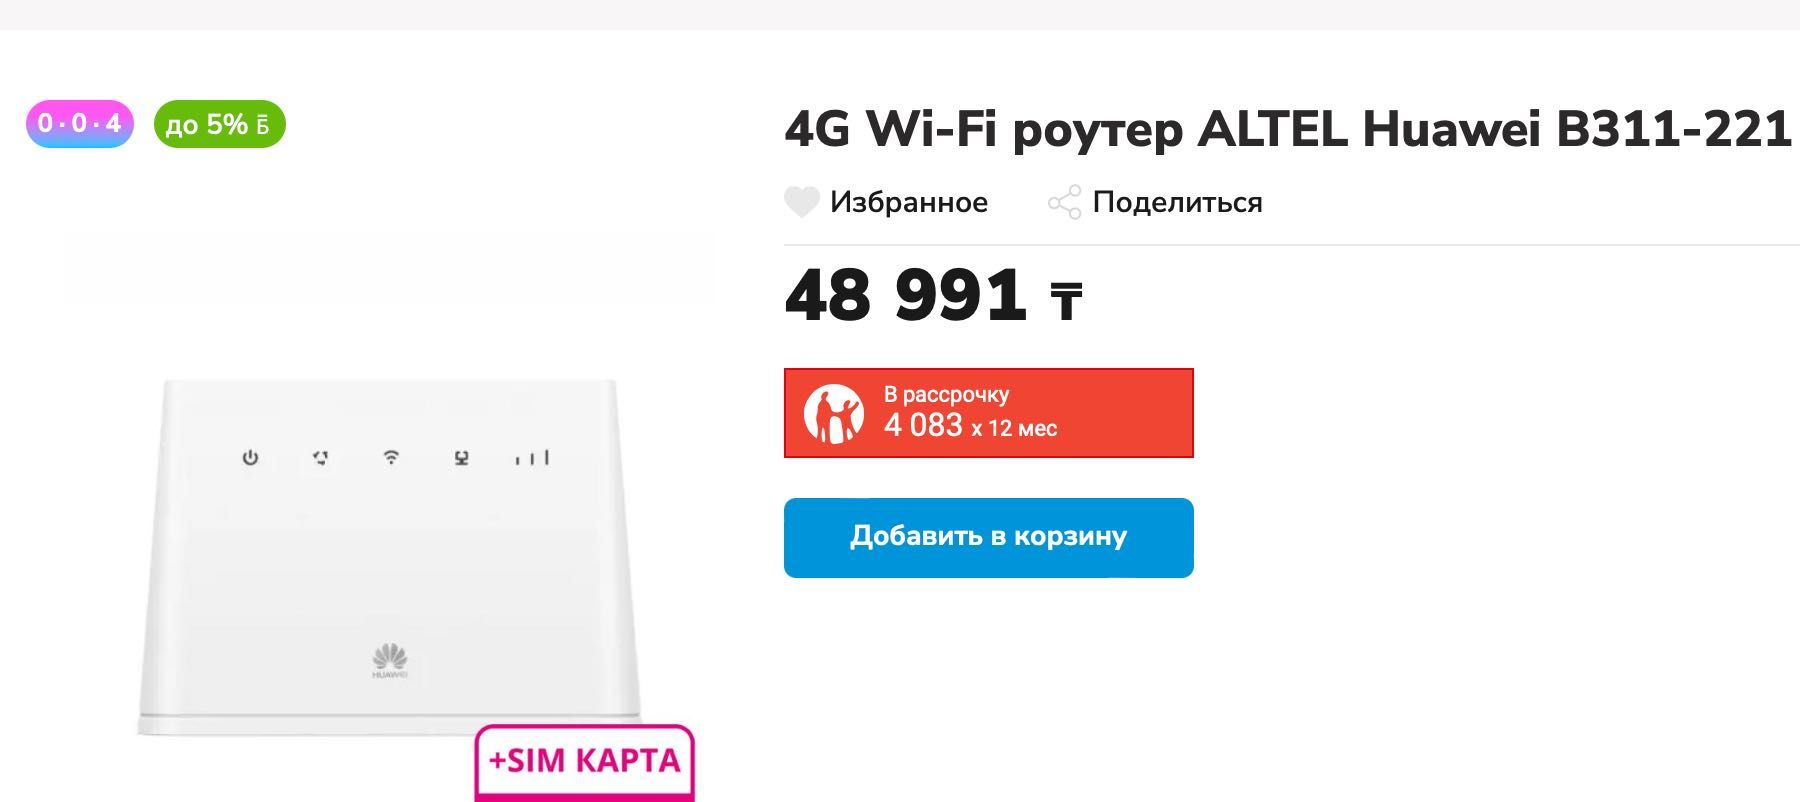 4G Wi-Fi роутер ALTEL Huawei B311-221